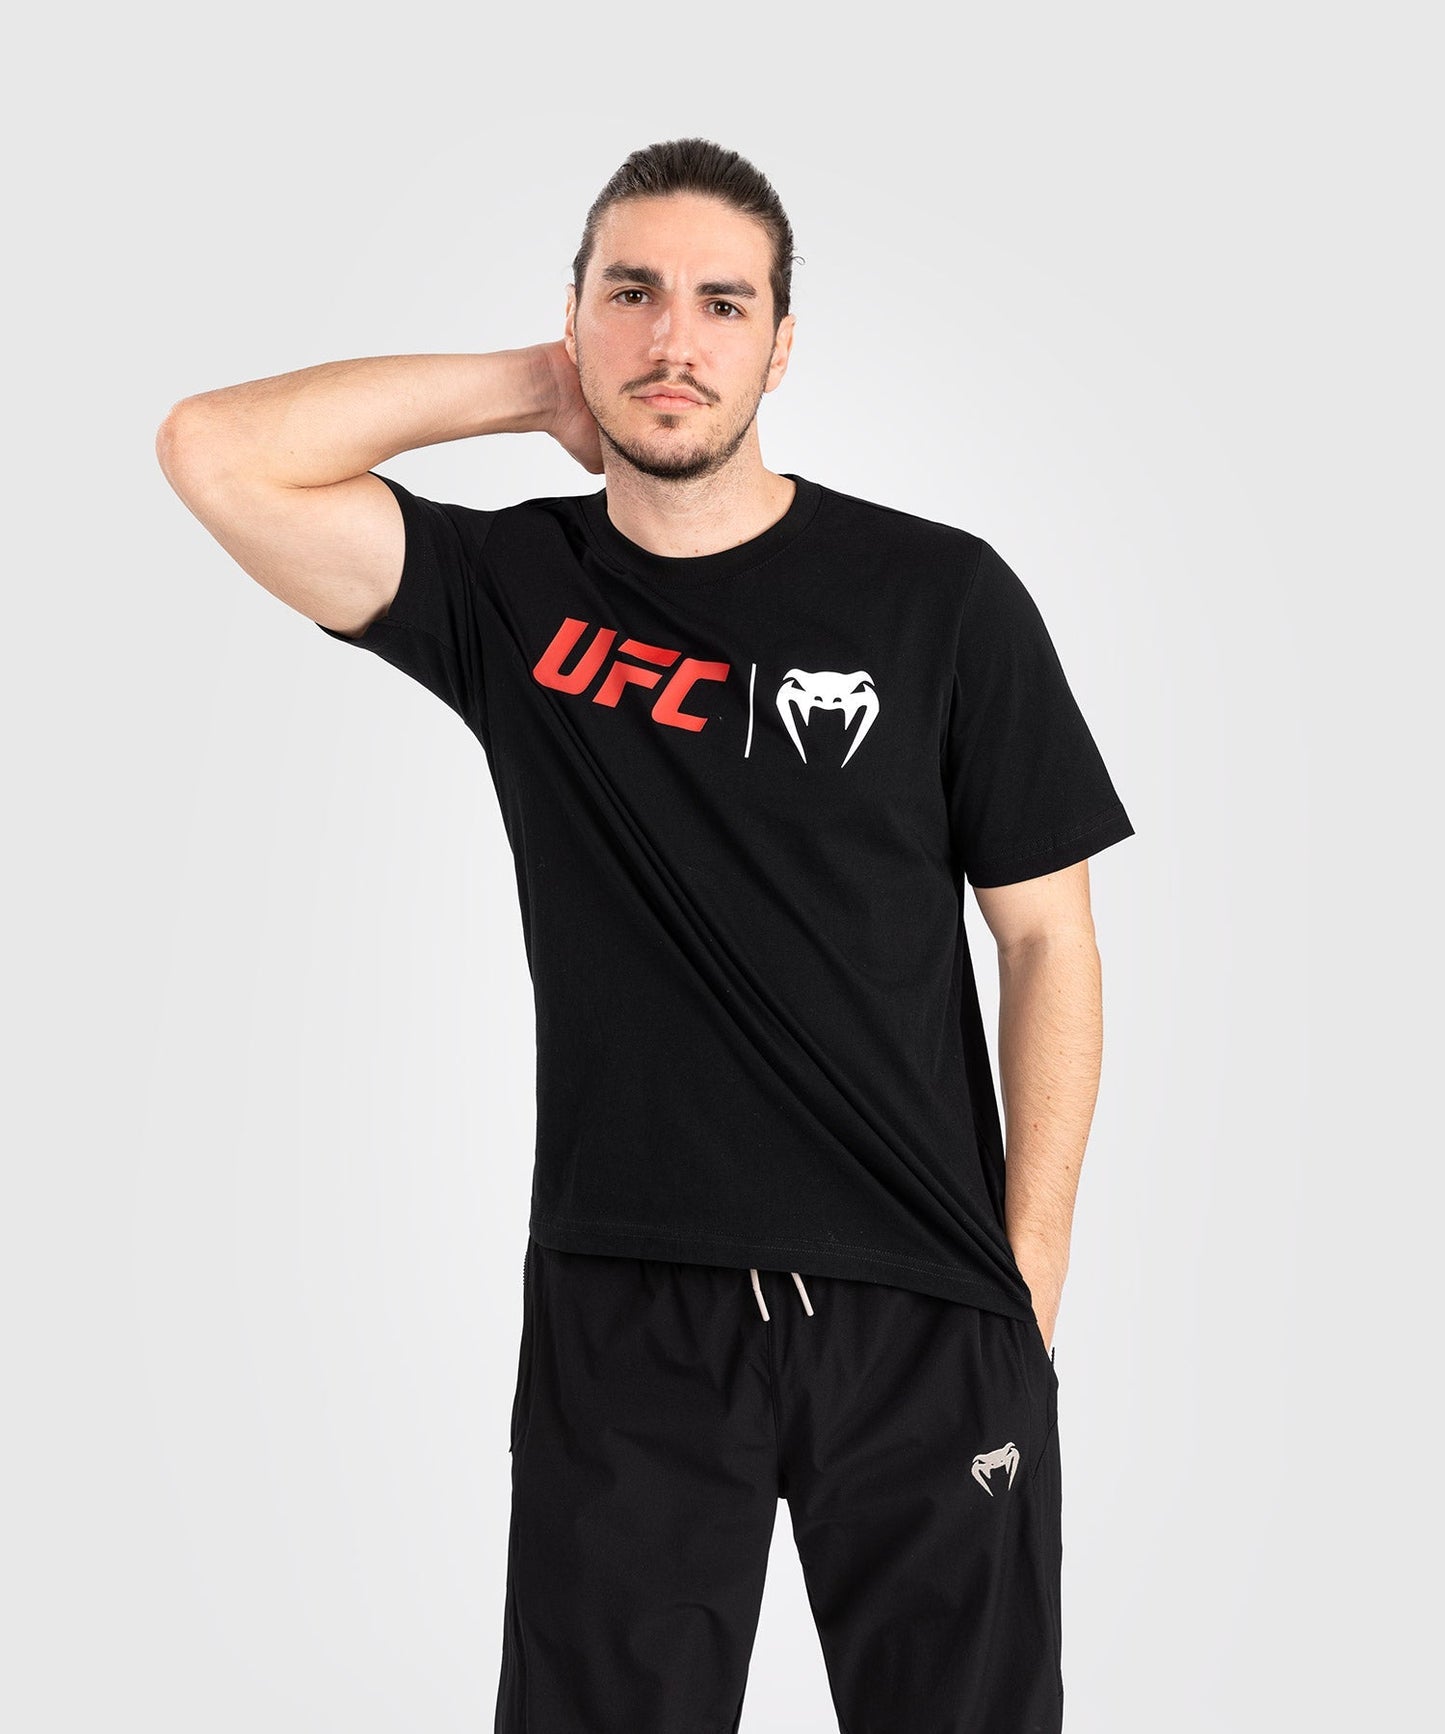 UFC Venum Classic  Camiseta - Negro/Rojo